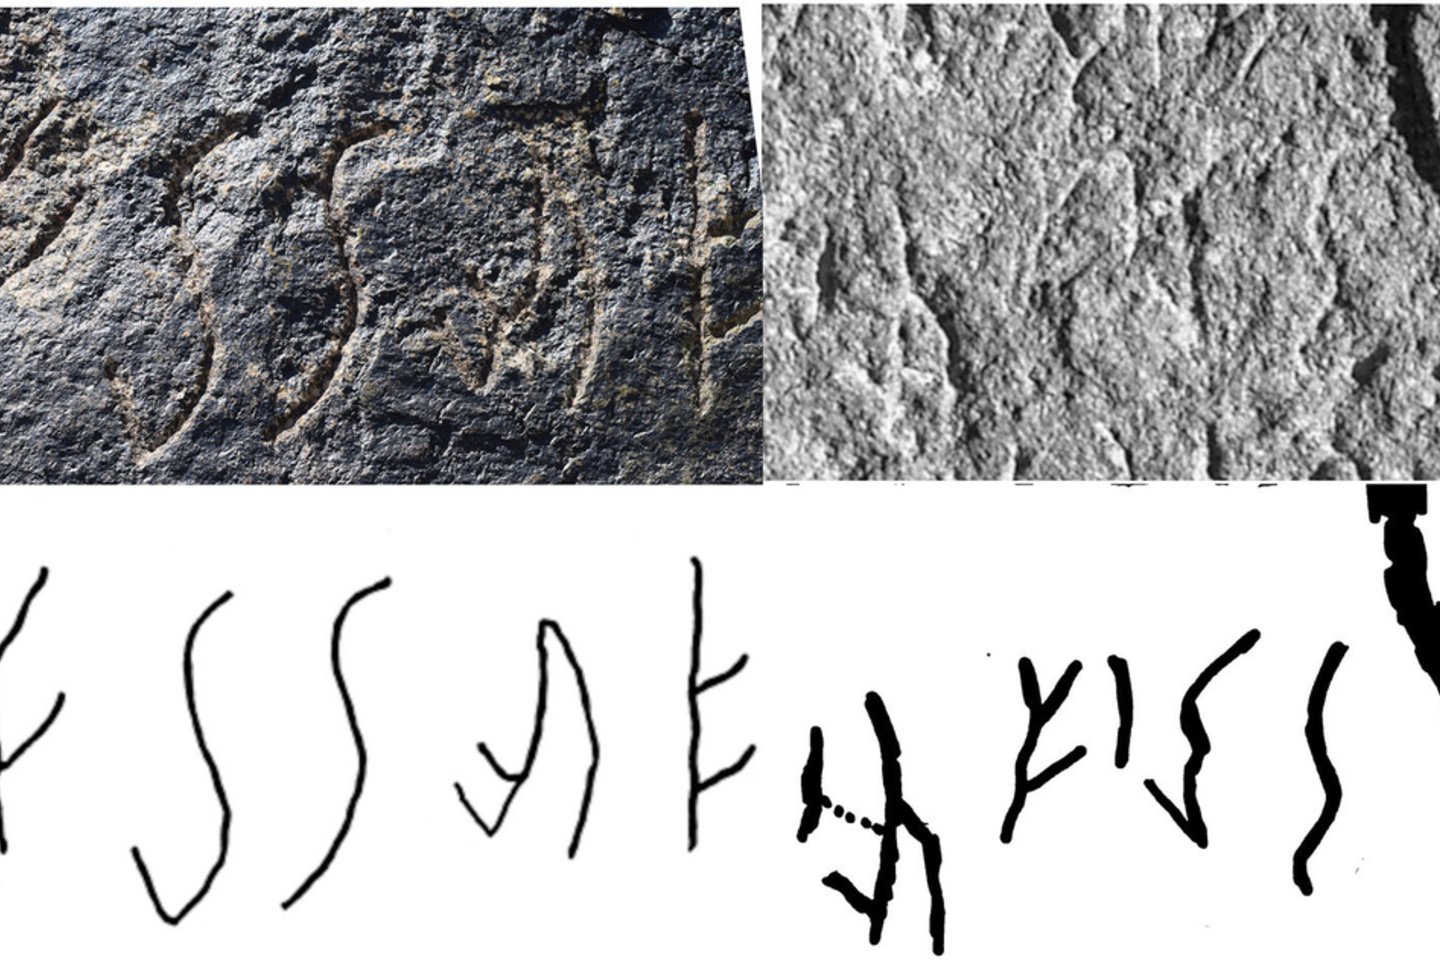  "Karalių karalius" seka: ⟨Šā-Wu-Nā-Na-Šā-Wu⟩ Almosi tarpeklyje I (kairėje) ir ⟨| Š(?)-W(u/a)-Nā-Na | Šā-W(u/a) |⟩ Dašt-i Nāwur III (dešinėje)